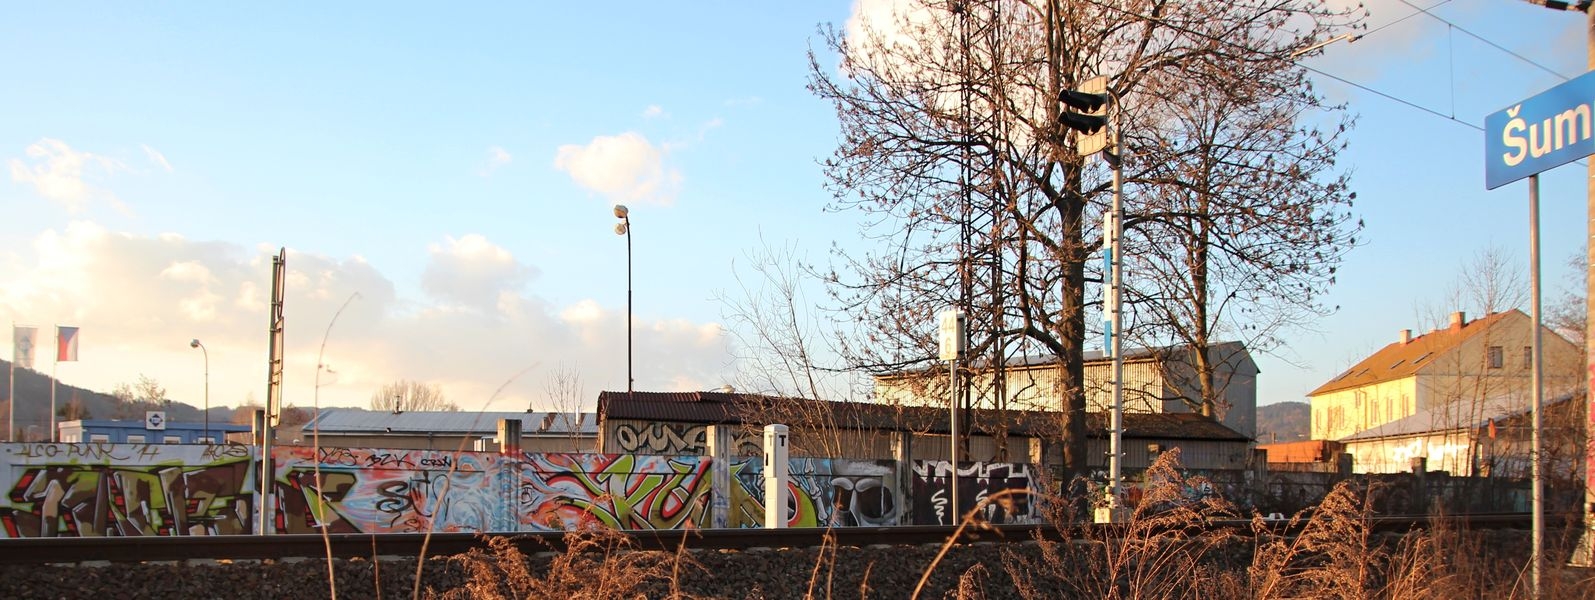 plocha neřízeného graffiti v Šumperku